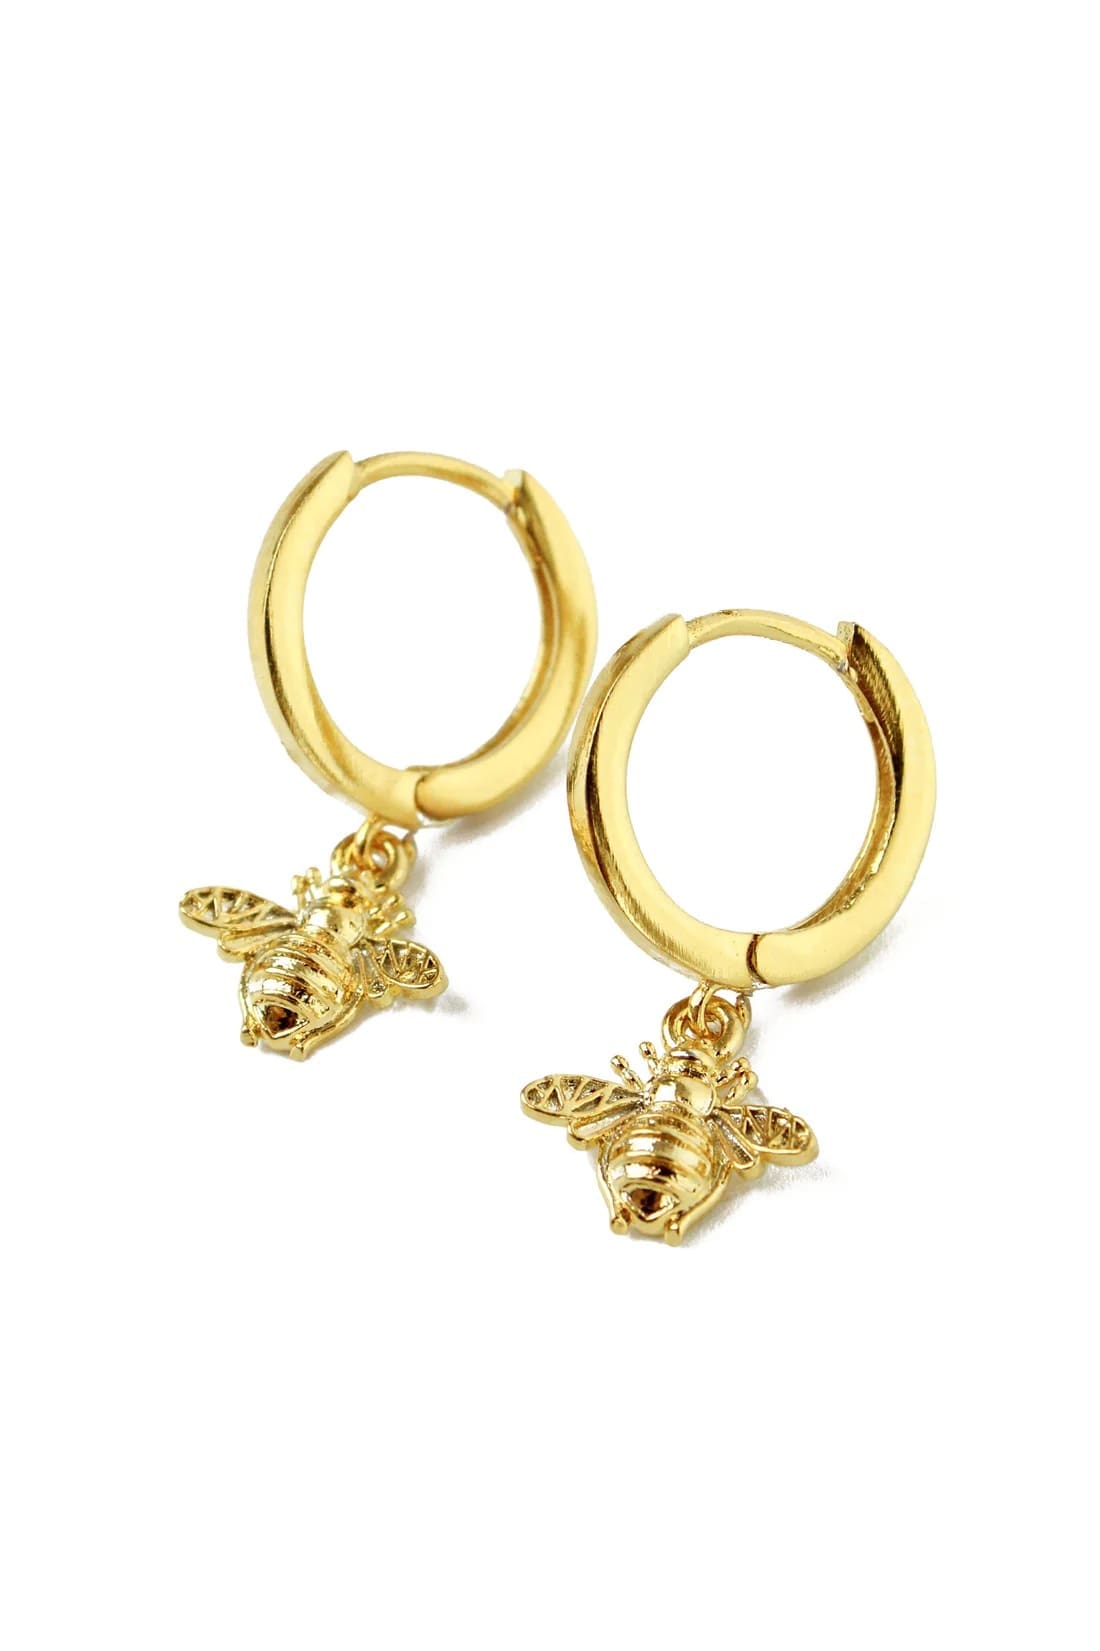 A pair of gold plated bee hoop earrings.